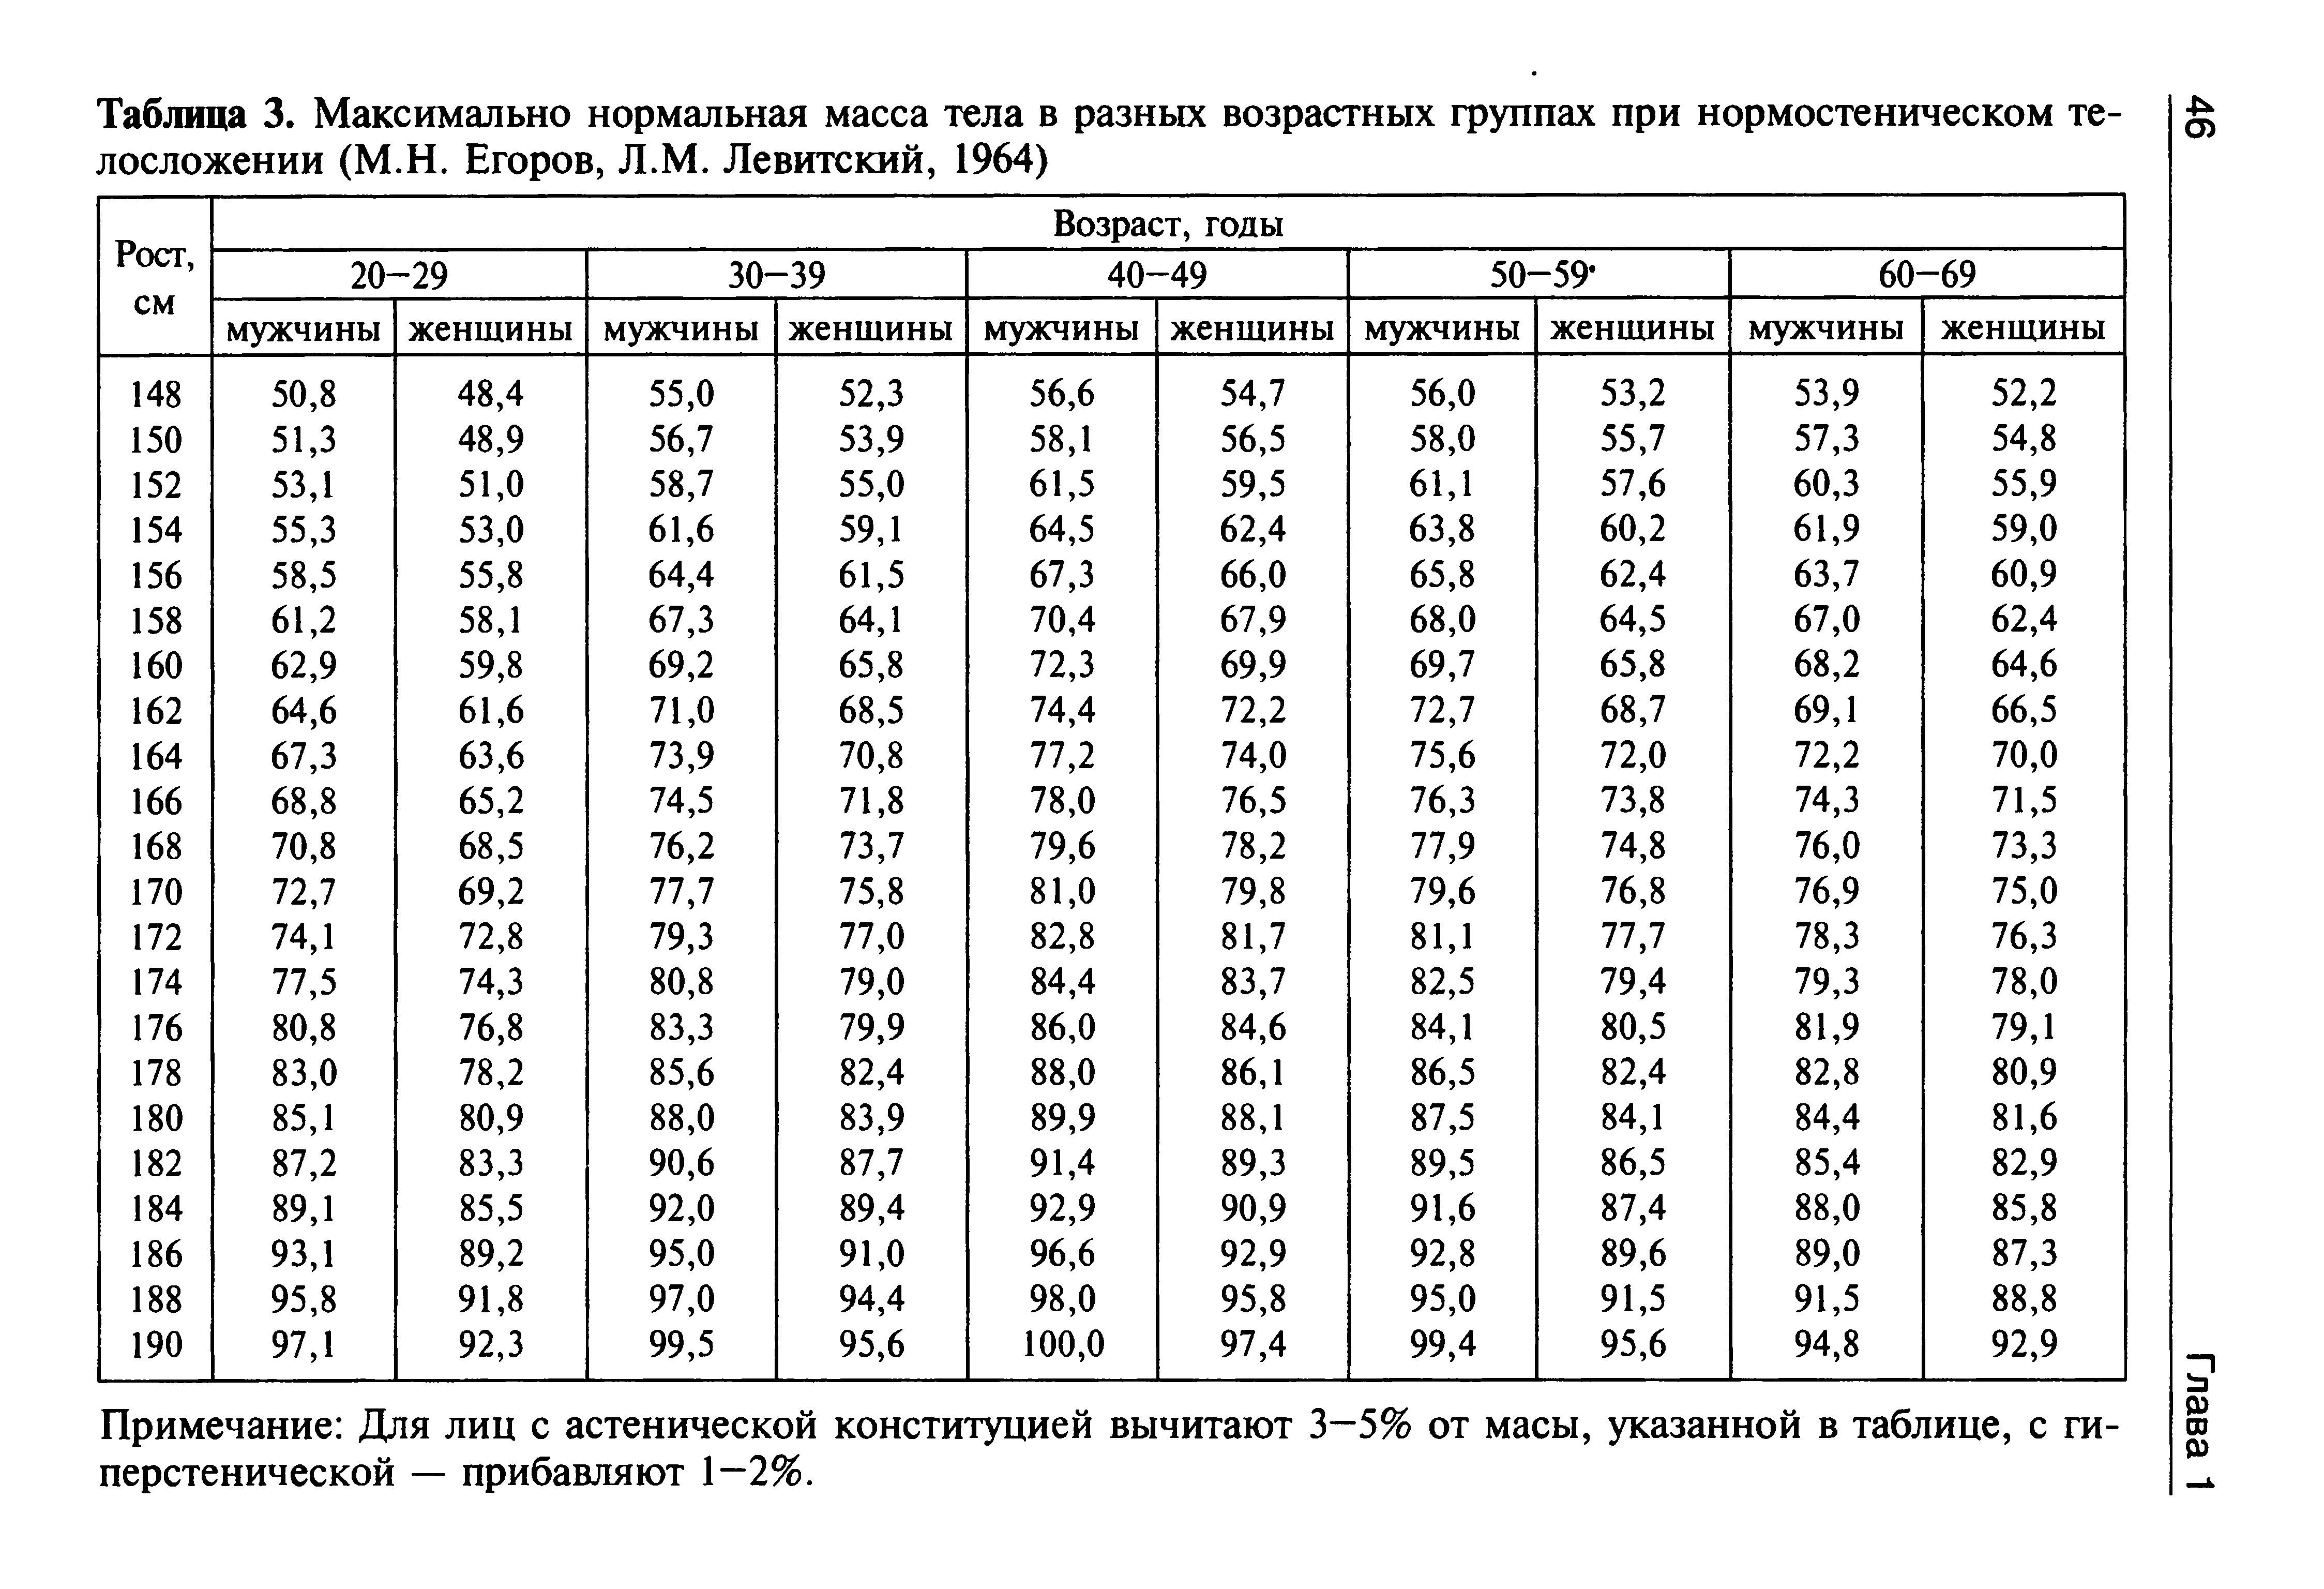 Таблица 3. Максимально нормальная масса тела в разных возрастных группах при нормостеническом телосложении (М.Н. Егоров, Л.М. Левитский, 1964)...